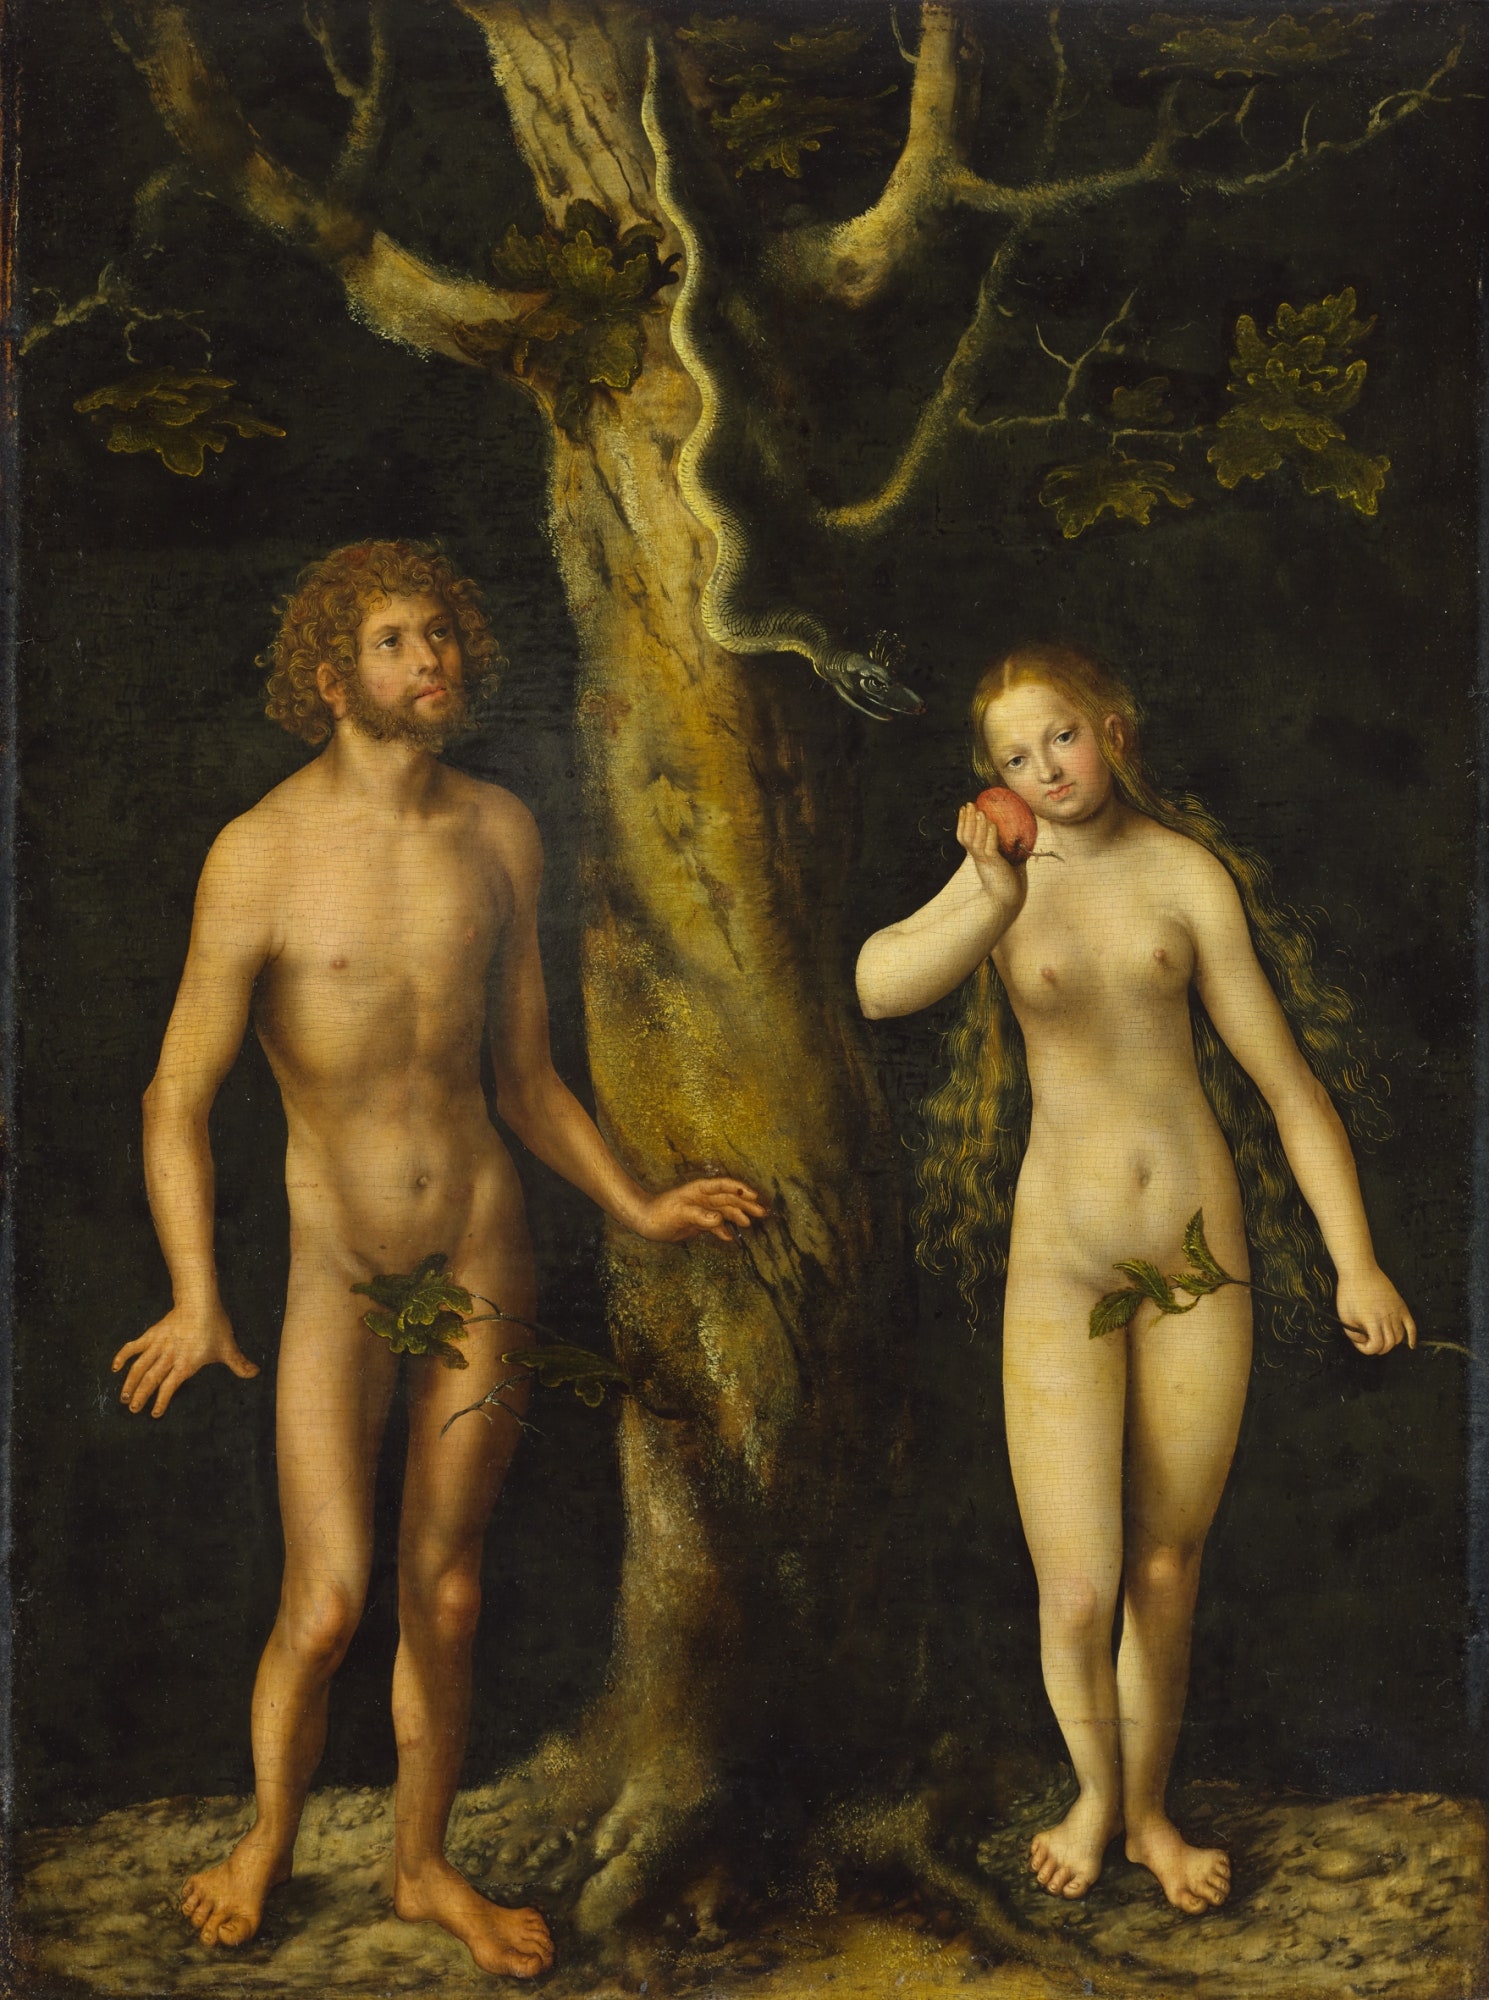 Лукас Кранах Старший . “Адам и Ева” около 1510 года. Масло без рамы 59 x 44 см. Национальный музей в Варшаве.